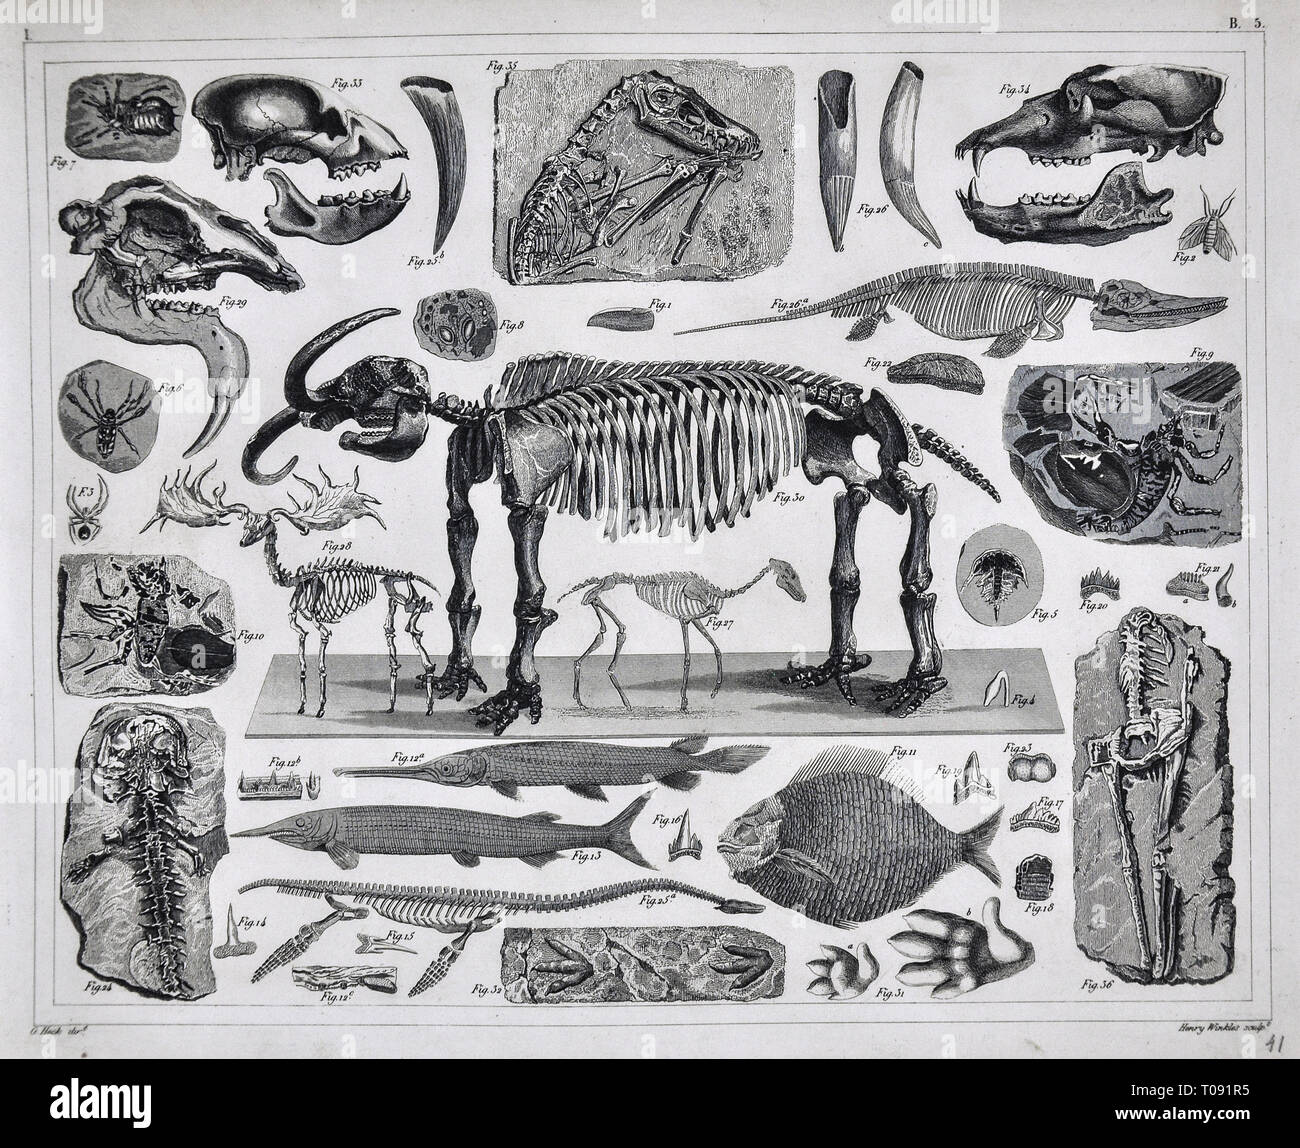 1849 Bilder Atlas Drucken - Prähistorische Fossilien aus der Erdneuzeit Pleistocene Periode einschließlich Mastodon, Saber Tooth Tiger, Spinnentiere, Fisch und andere ausgestorbene Arten Stockfoto